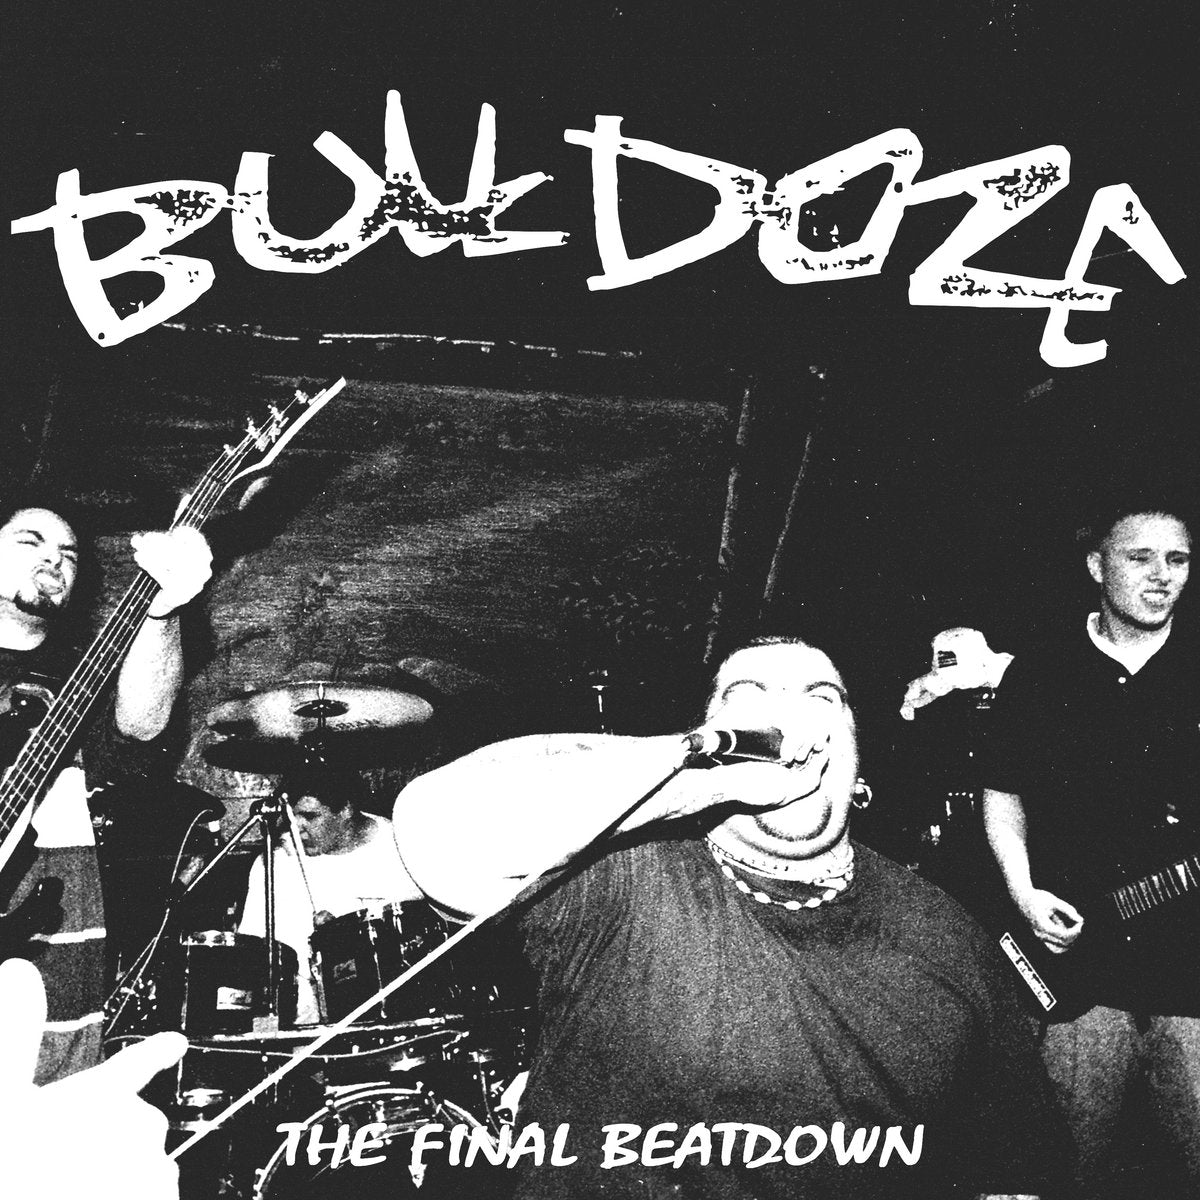 Bulldoze "The Final Beatdown" CD